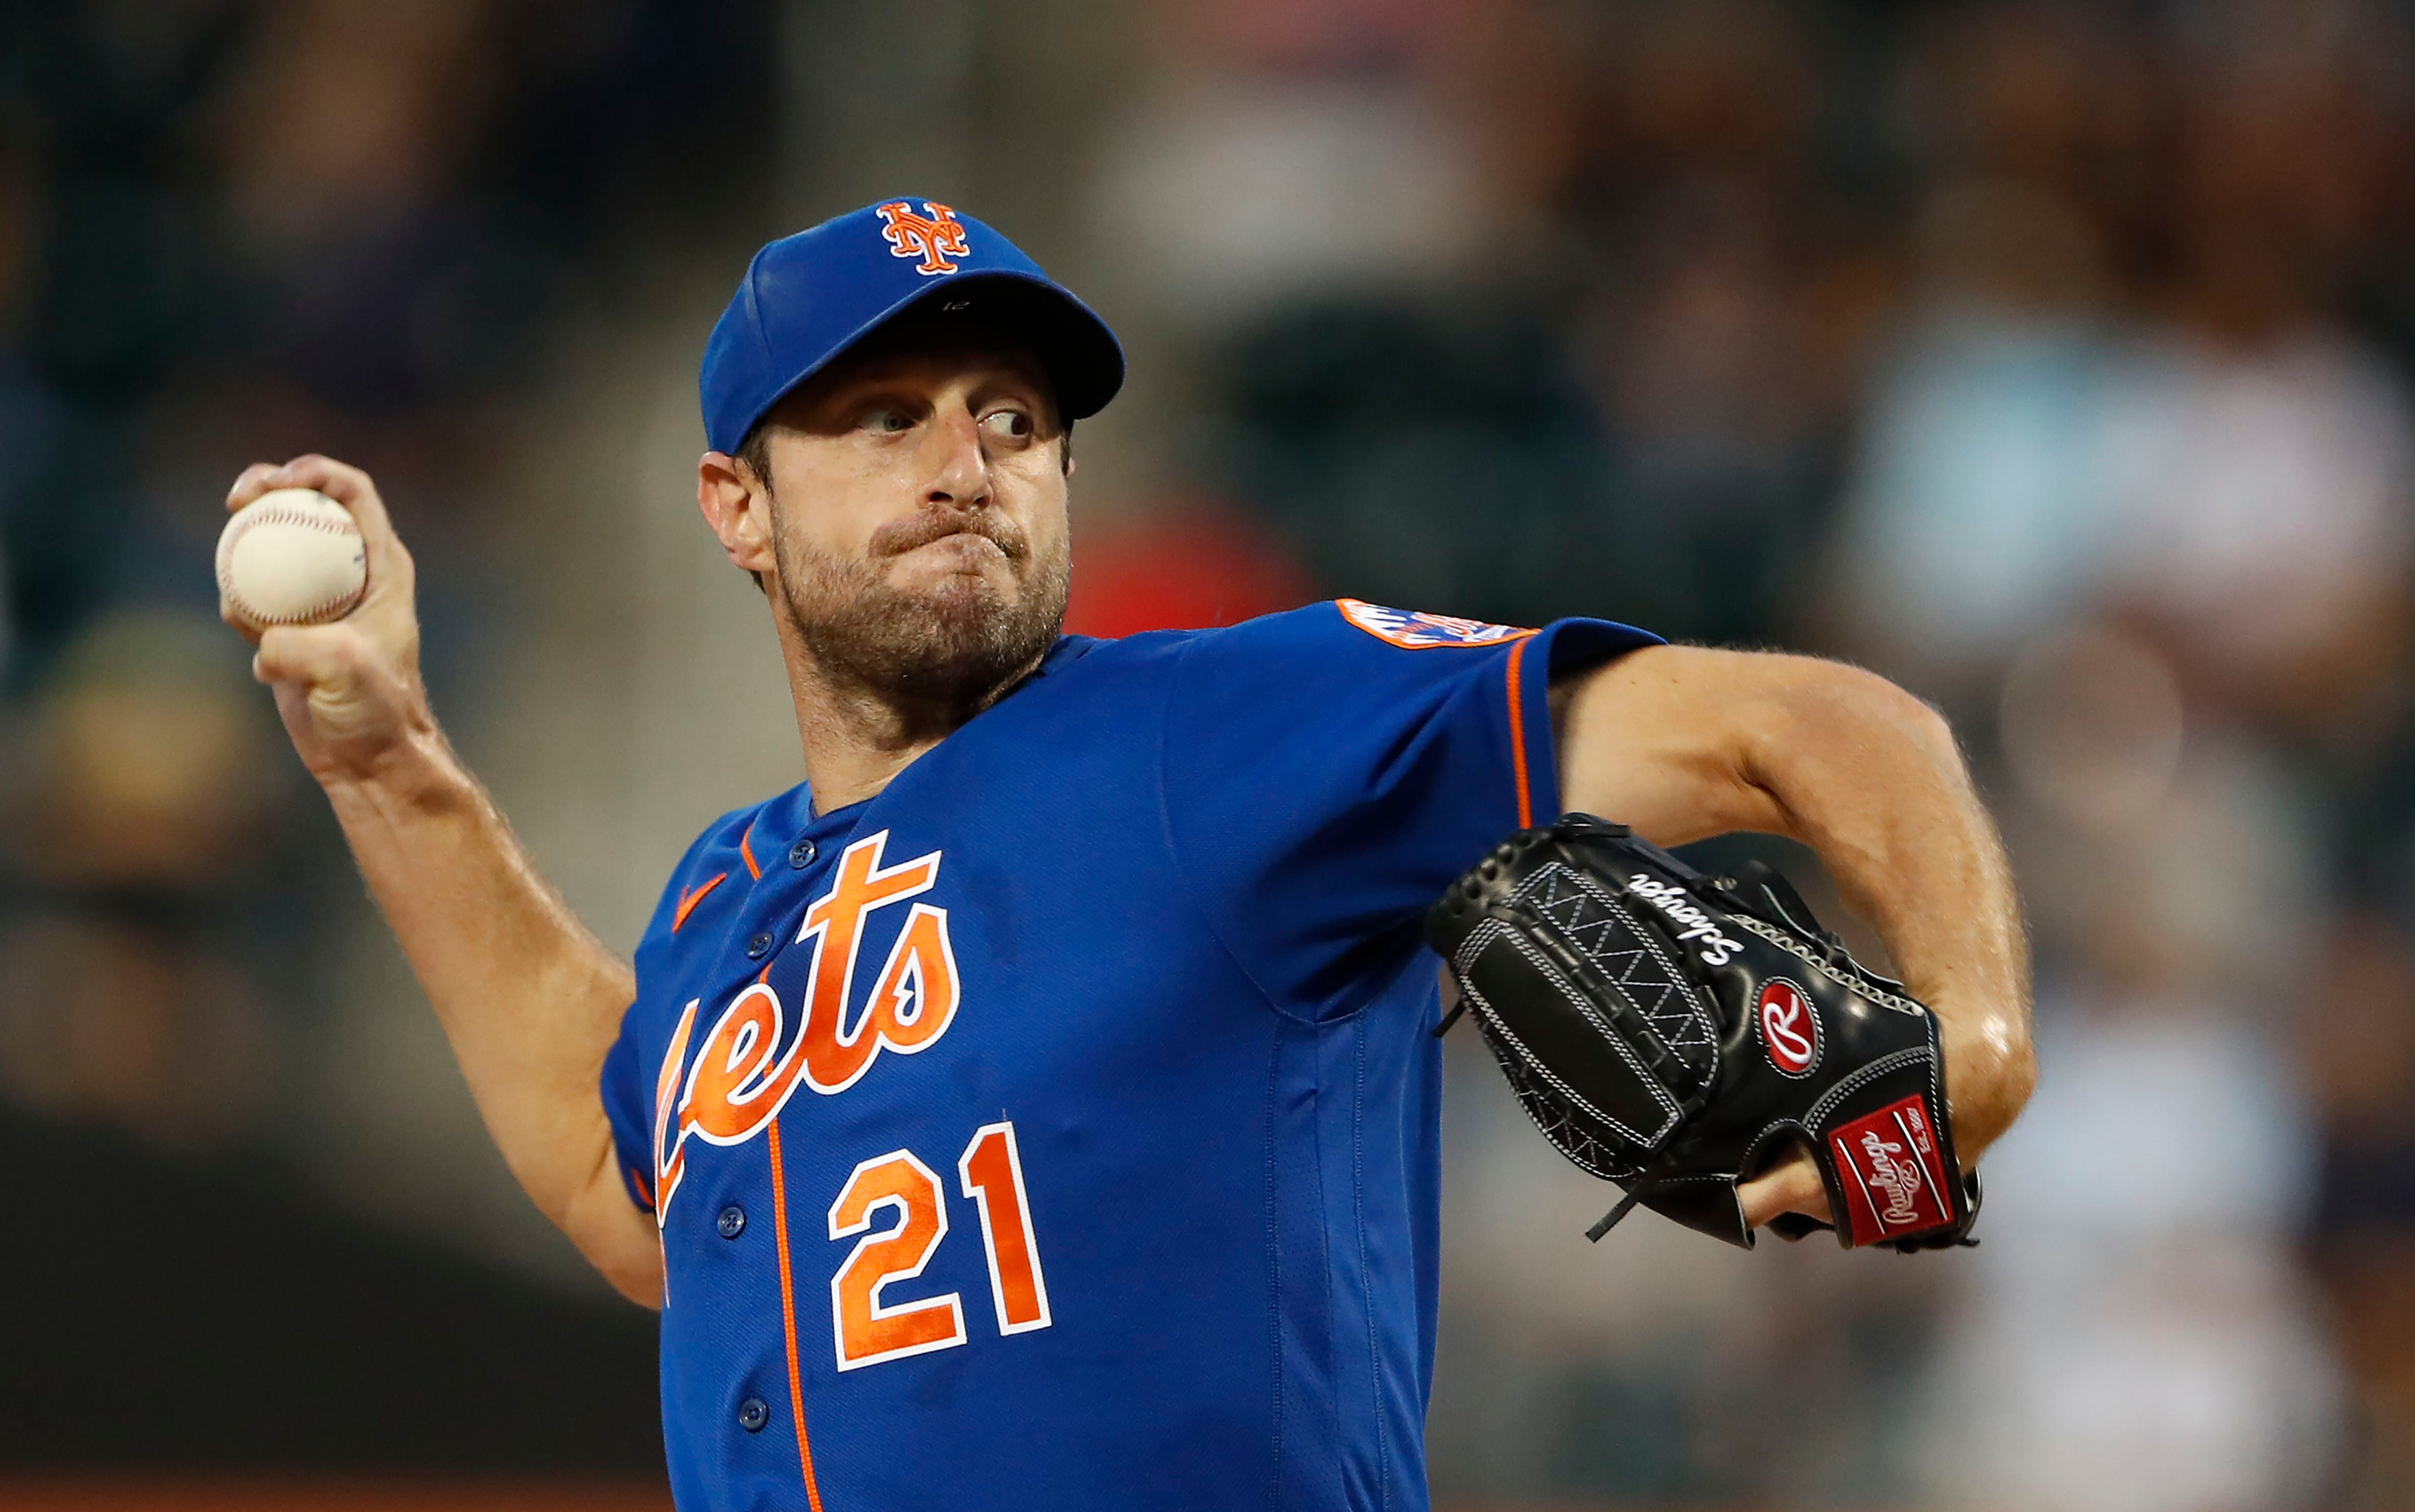 Mets star pitcher Max Scherzer to make rehab start in Syracuse Wednesday